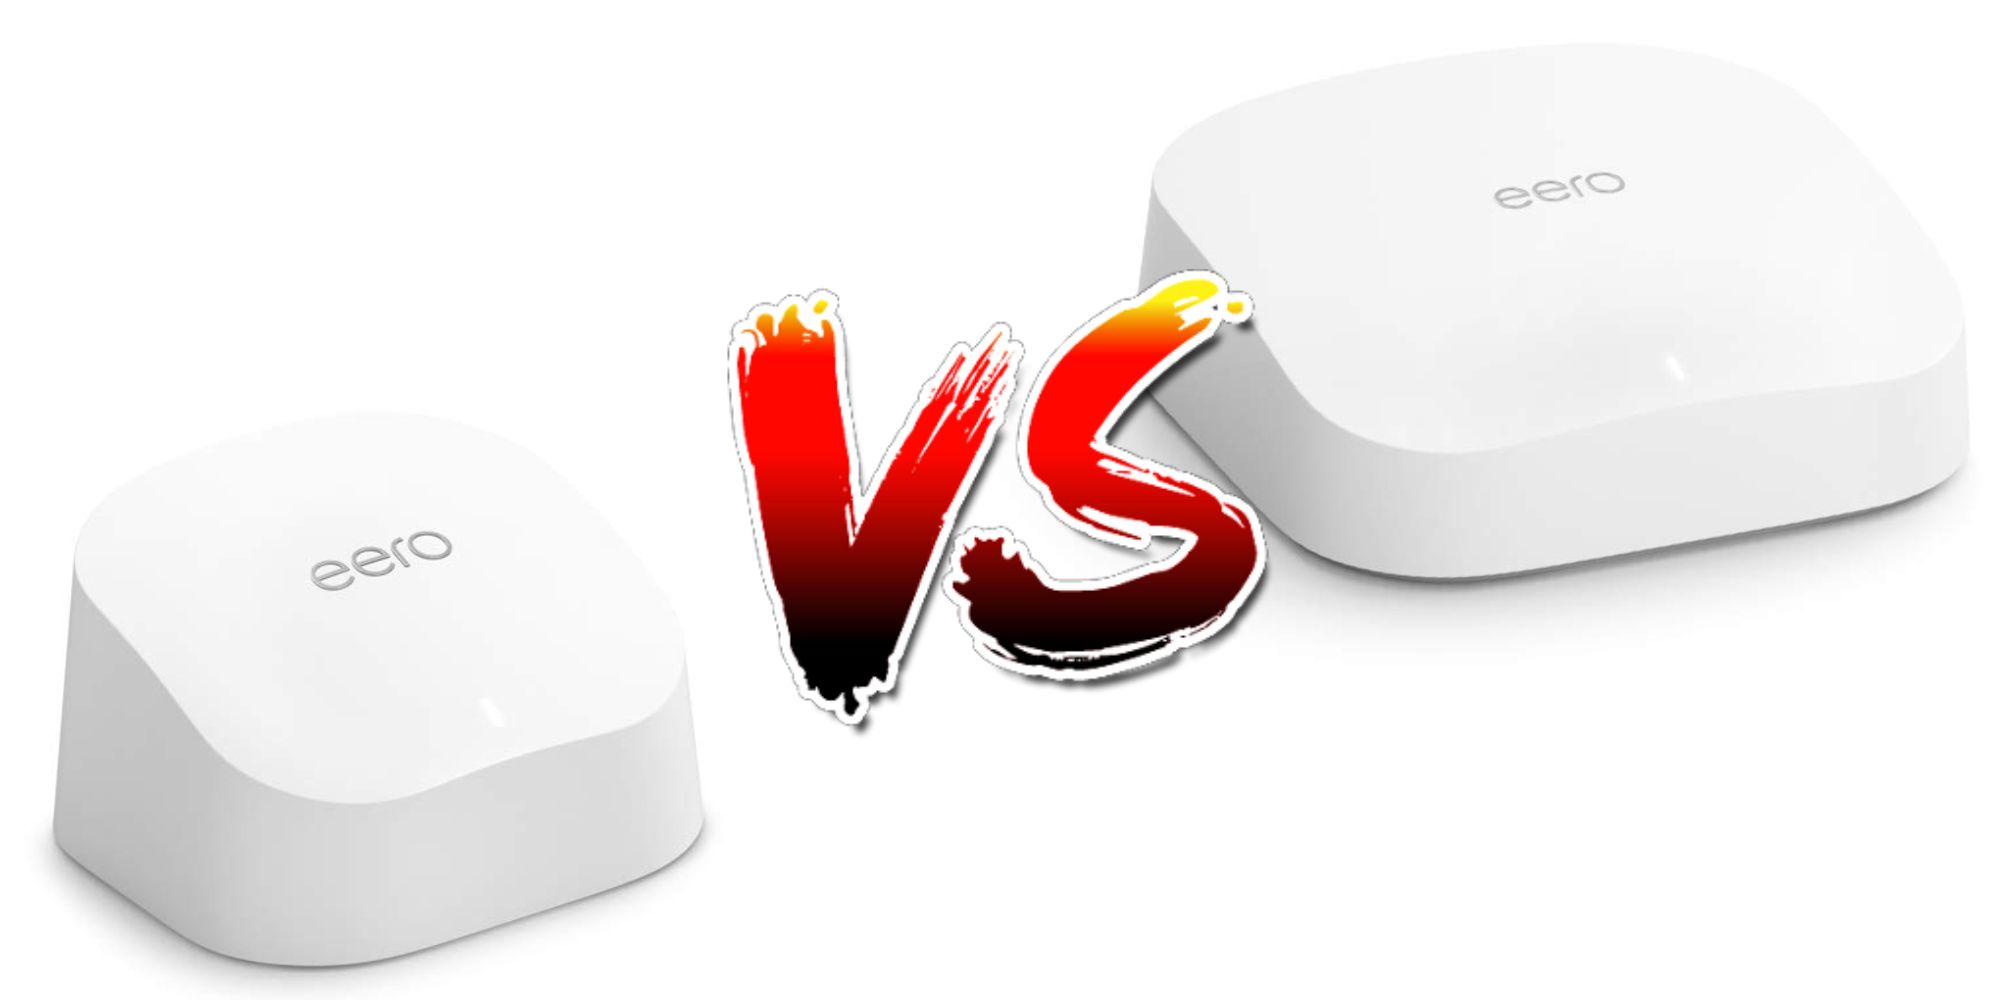 Eero 6 vs.  Eero Pro 6: ¿Qué enrutador Wi-Fi debería comprar?